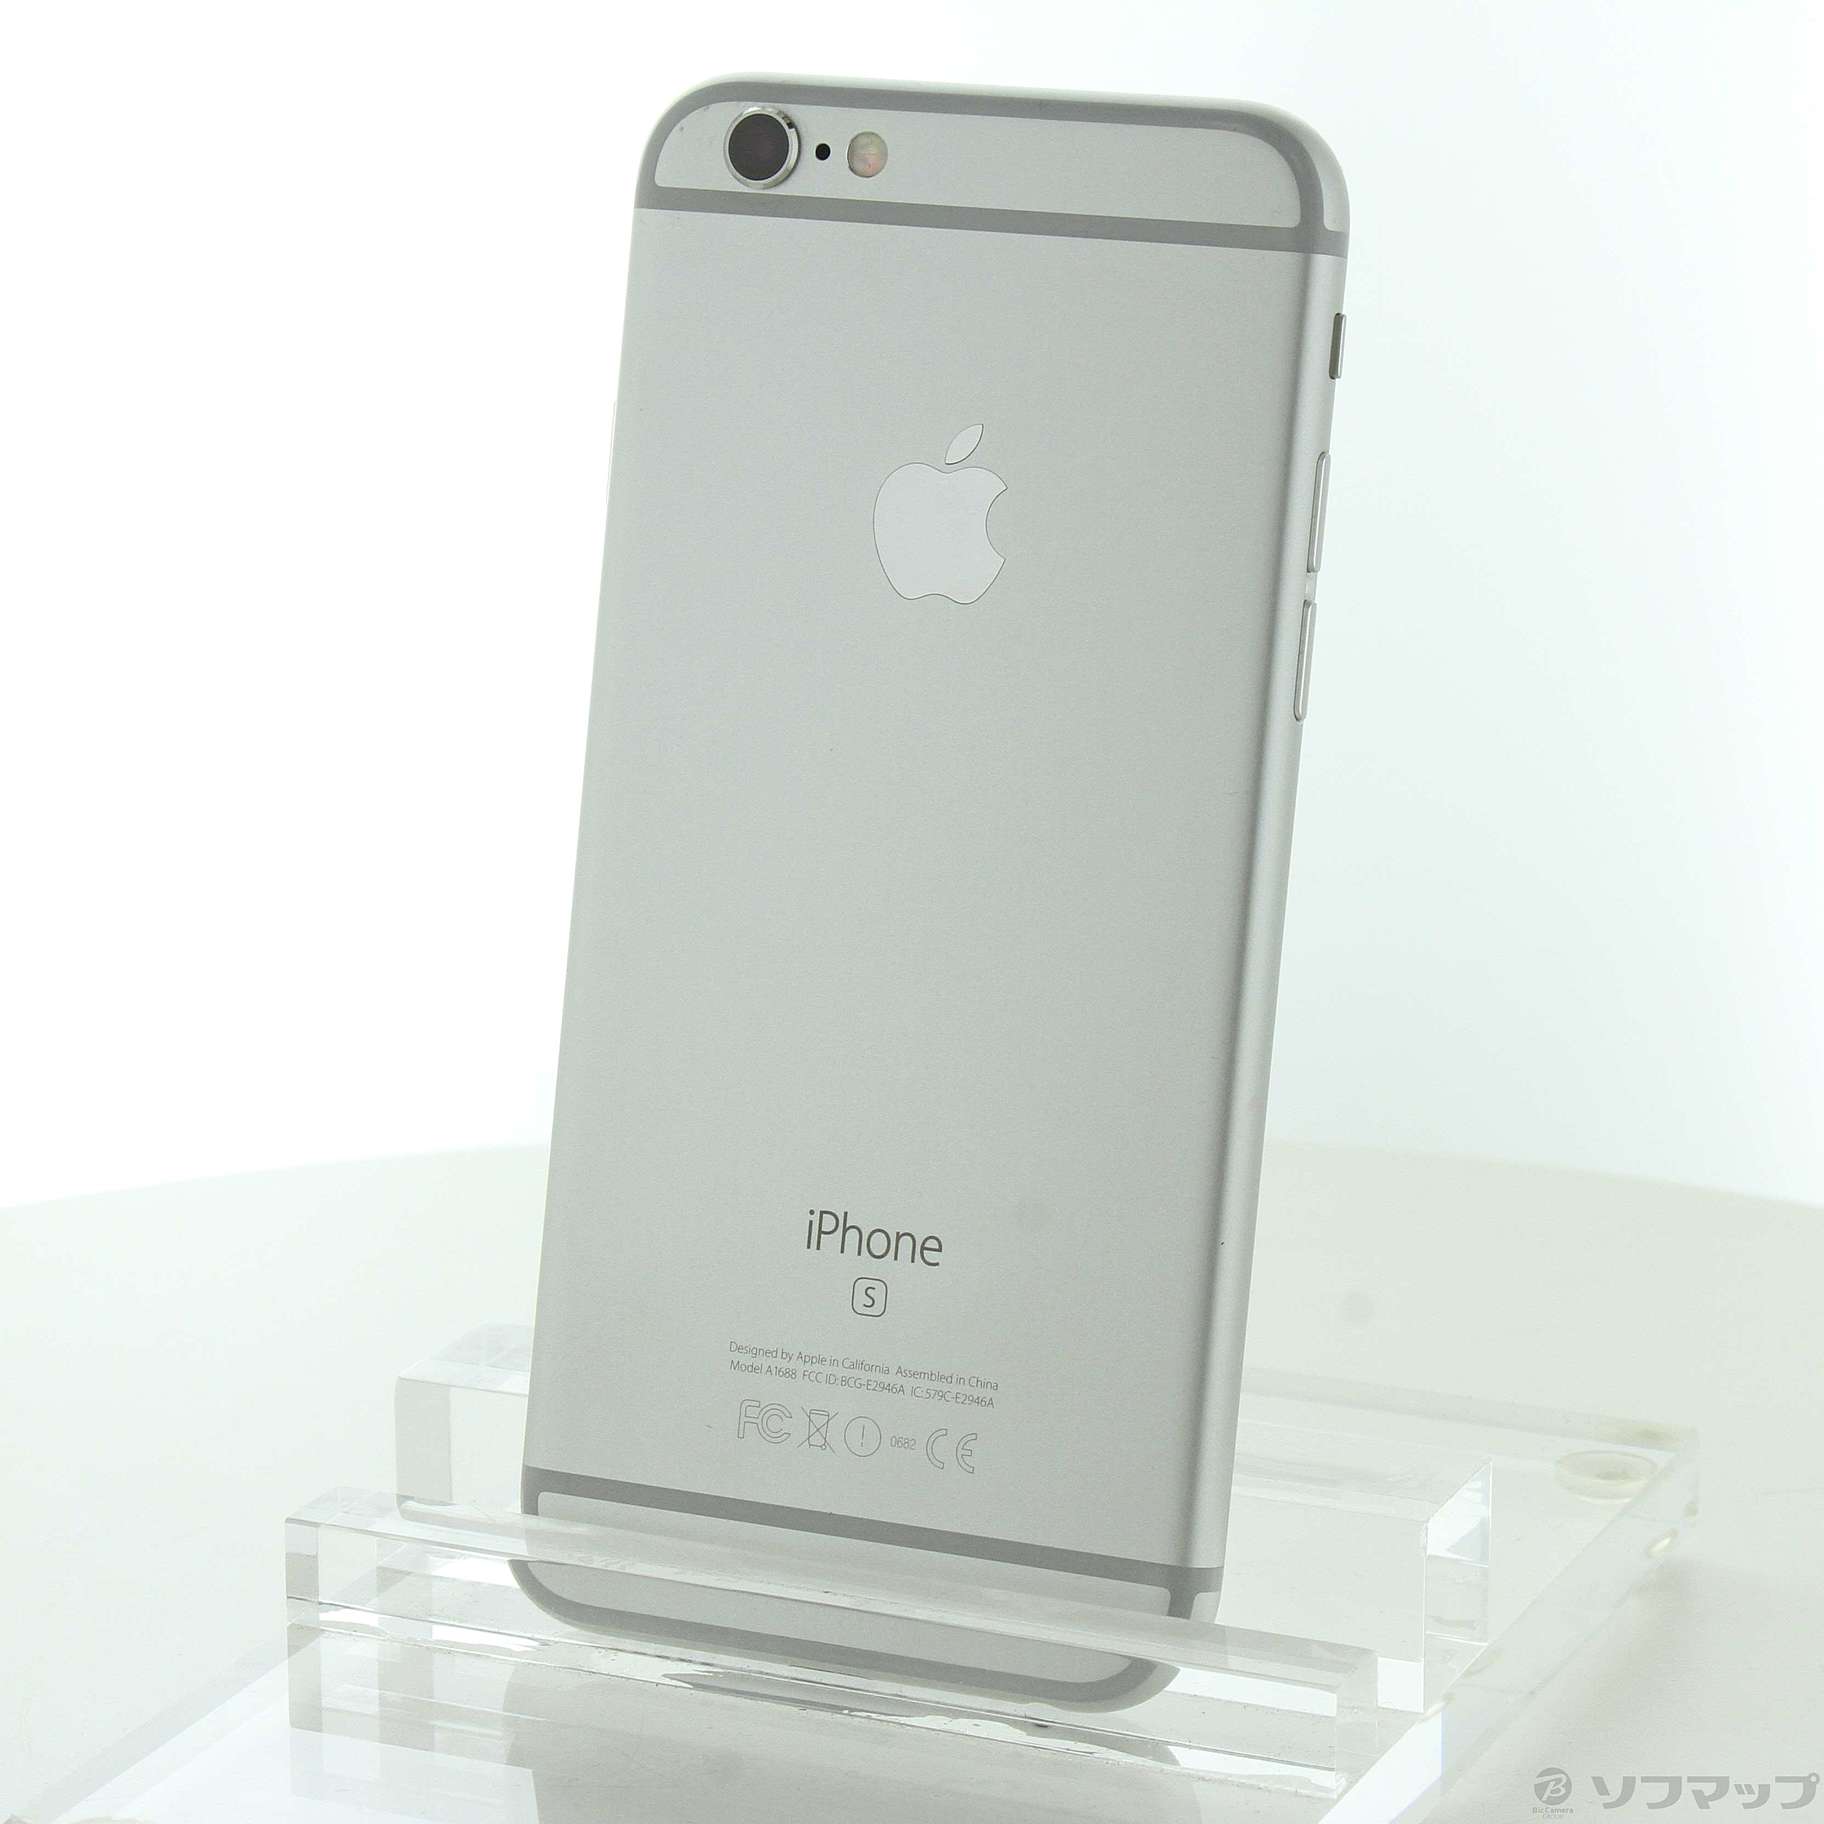 iPhone 6s Silver 128 GB SIMフリー